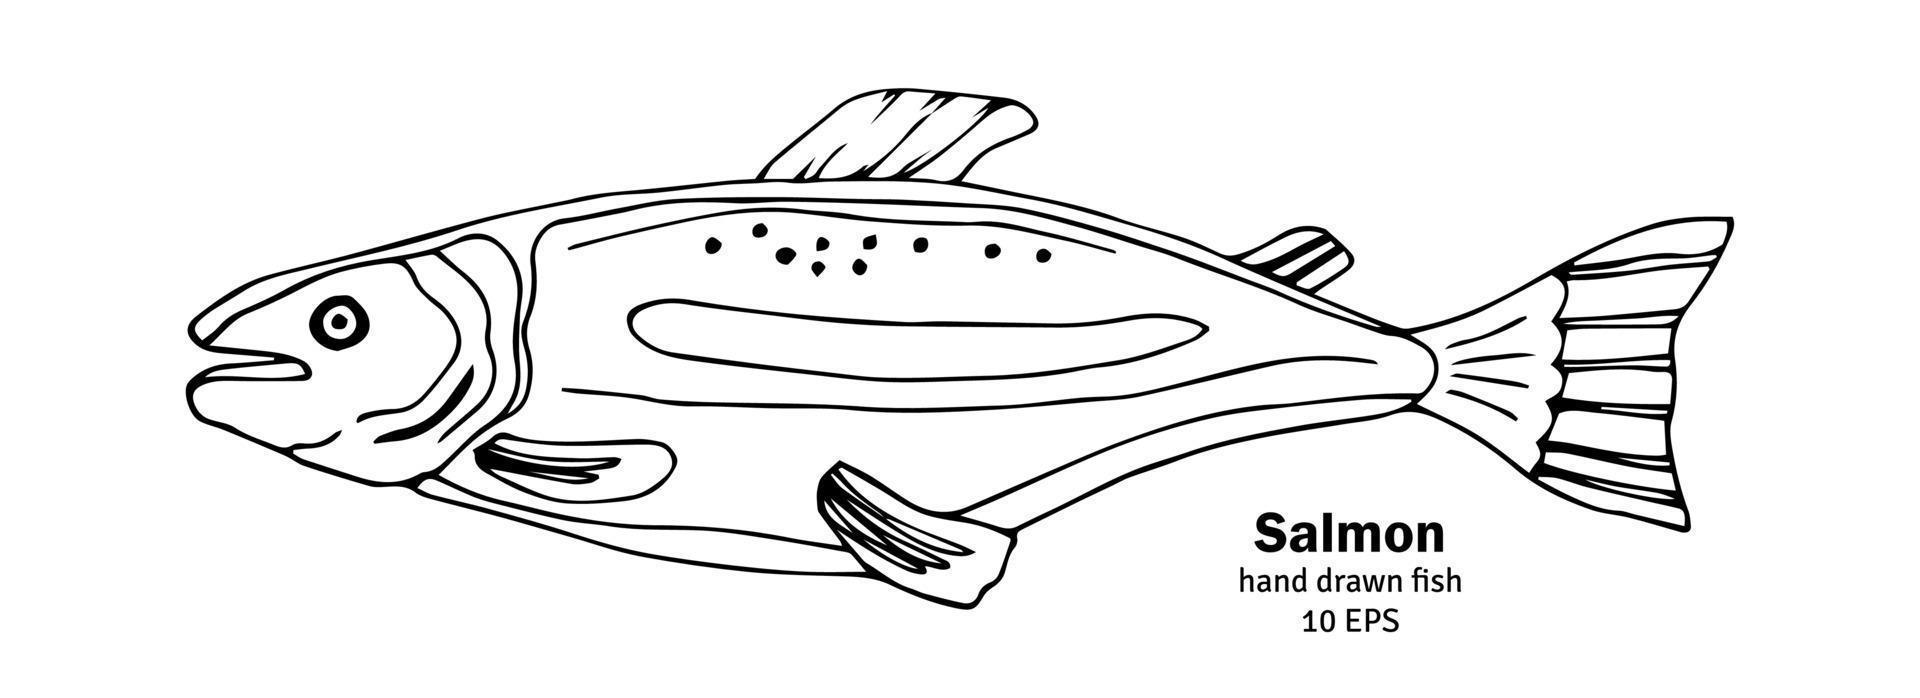 vecteur de poisson saumon. illustration de croquis de saumon rose. fruits de mer à la truite. icône de doodle vintage dessiné à la main. fruits de mer, logo à l'encre noire et blanche. dessin d'art dans un style vintage